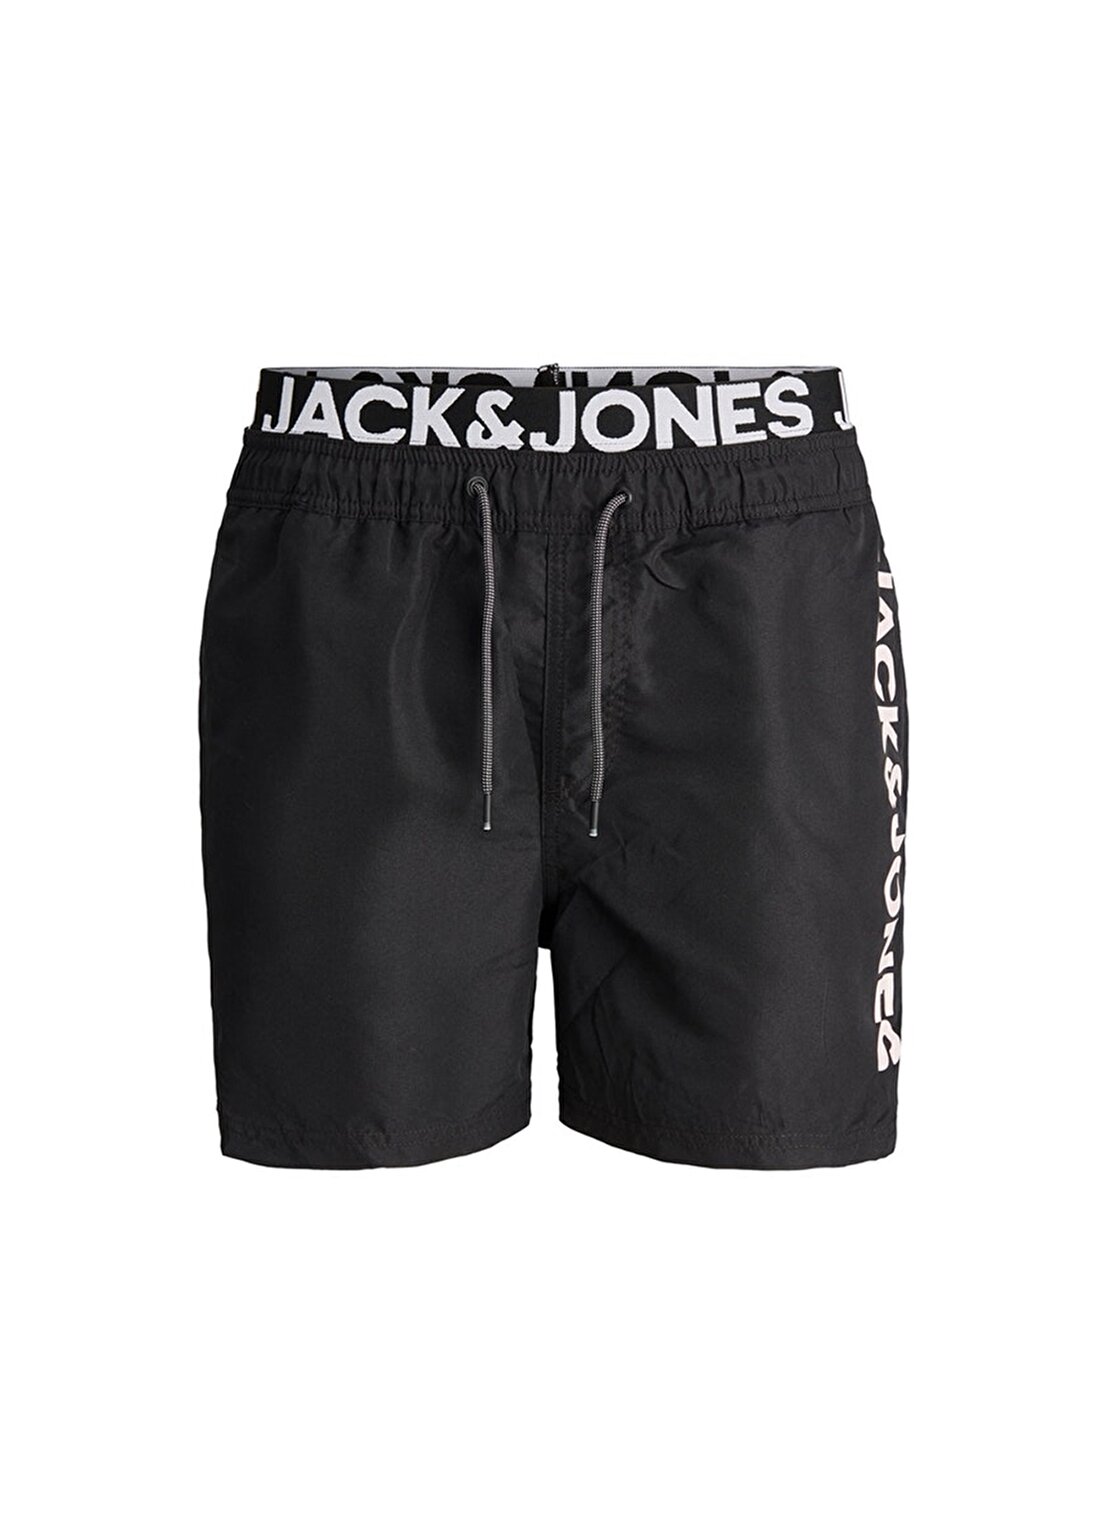 Jack & Jones %50 Geri Dönüştürülmüş Cepdetaylı Siyah Erkek Şort